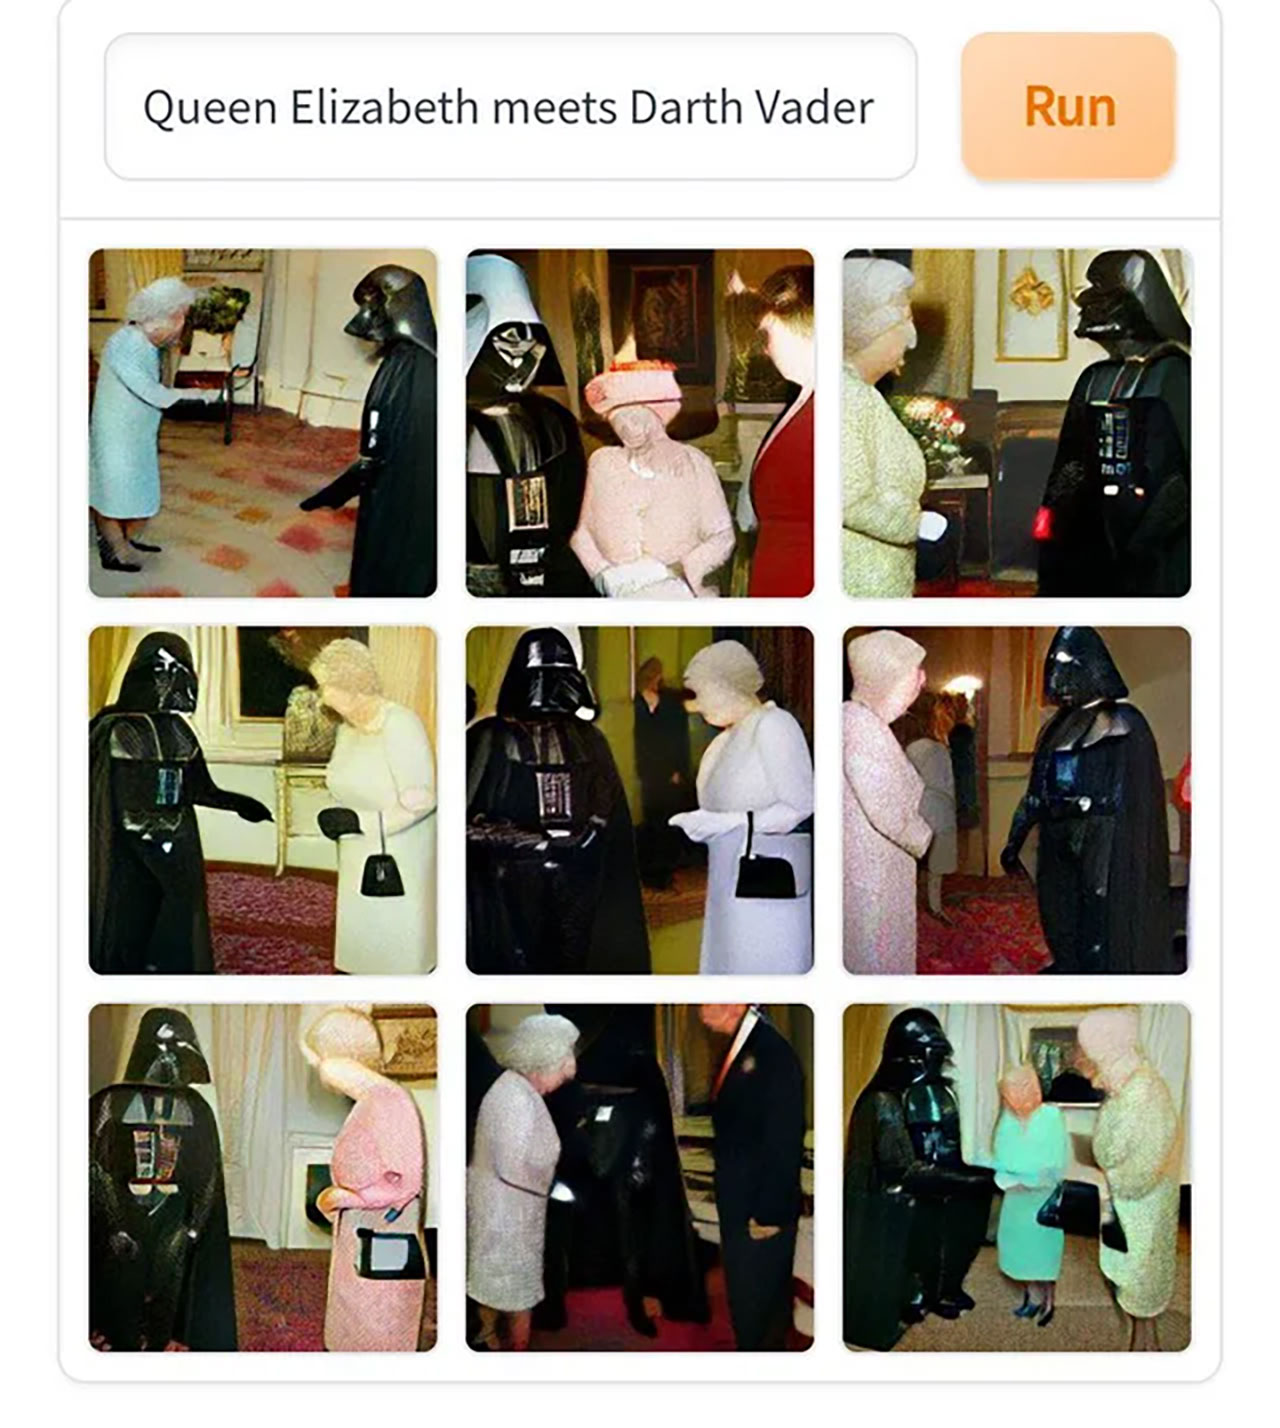 Queen Elizabeth and Darth Vader